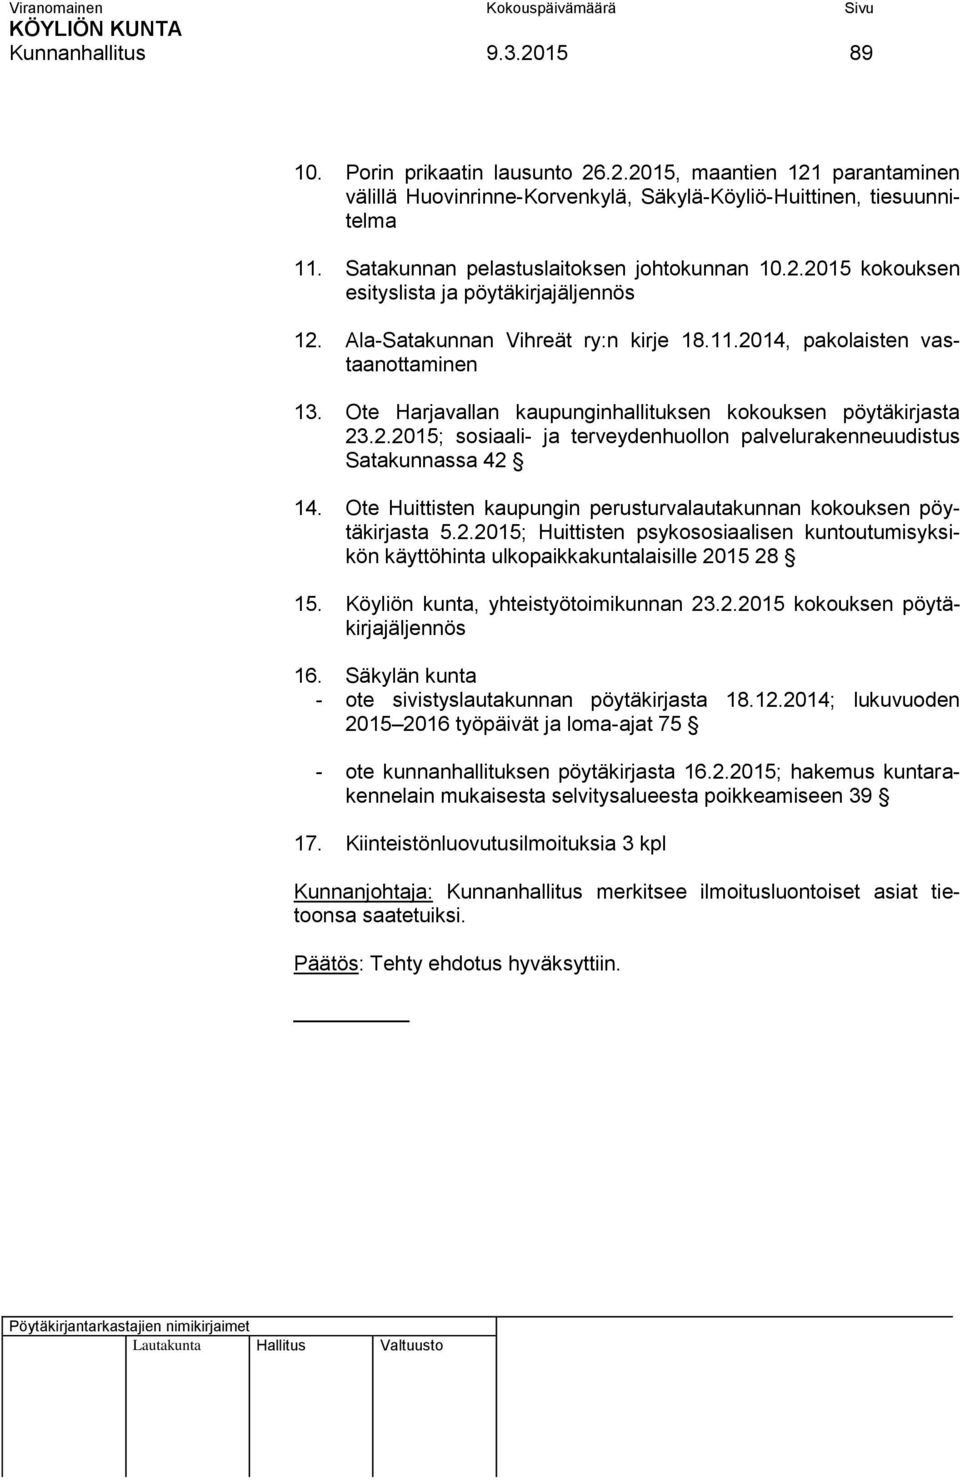 Ote Harjavallan kaupunginhallituksen kokouksen pöytäkirjasta 23.2.2015; sosiaali- ja terveydenhuollon palvelurakenneuudistus Satakunnassa 42 14.